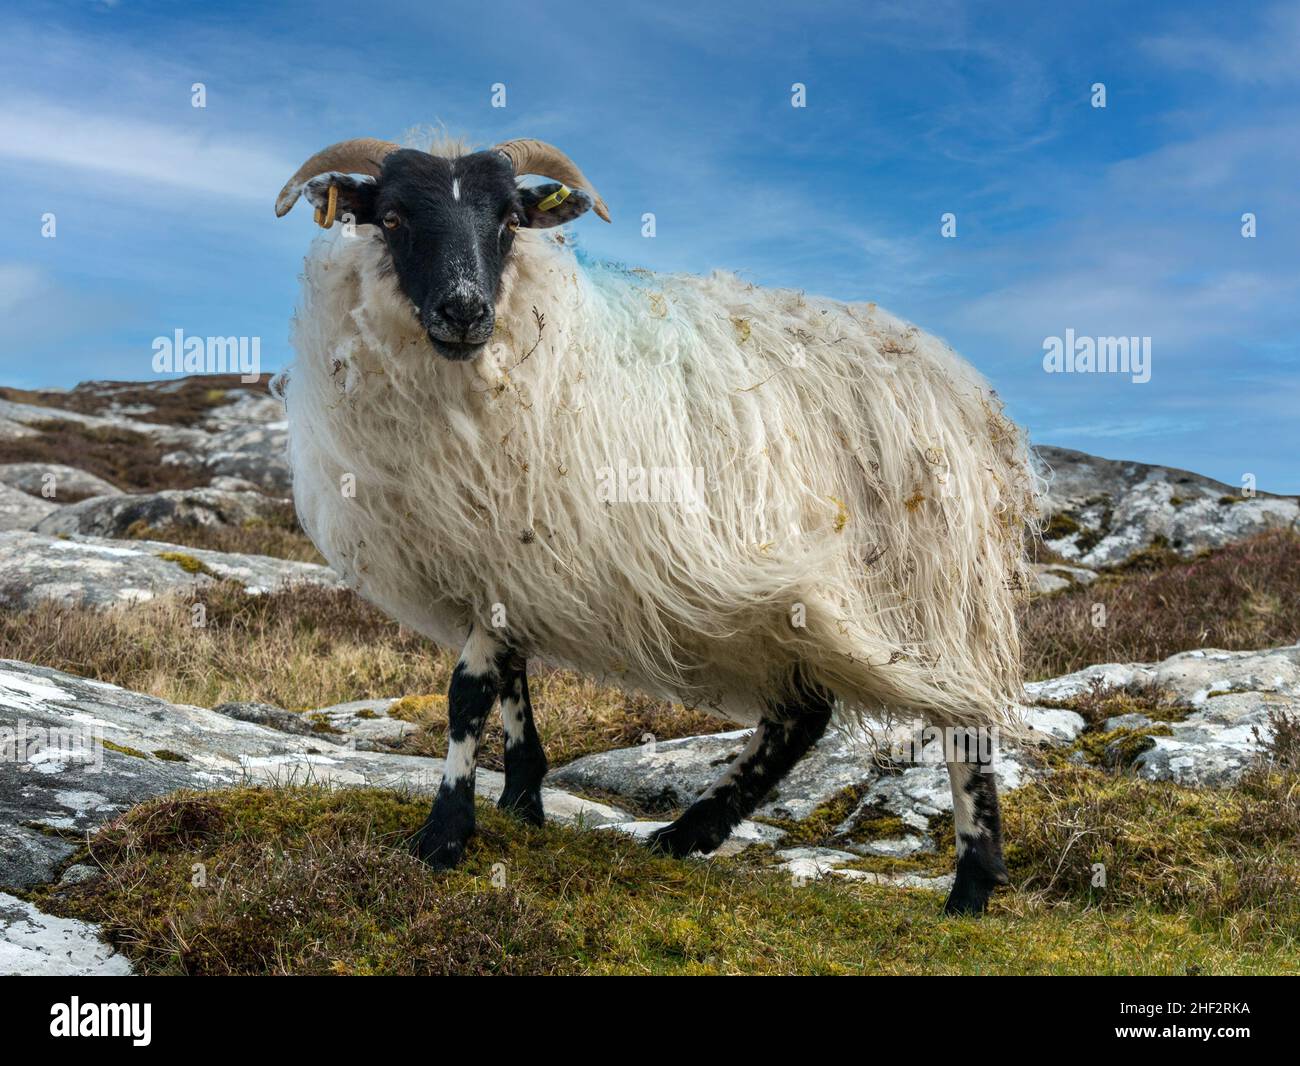 Une brebis écossaise avec un visage noir, des cornes et une longue laine polaire blanche déchiquetée sur une colline rocheuse, Isle of Lewis, Écosse, Royaume-Uni Banque D'Images